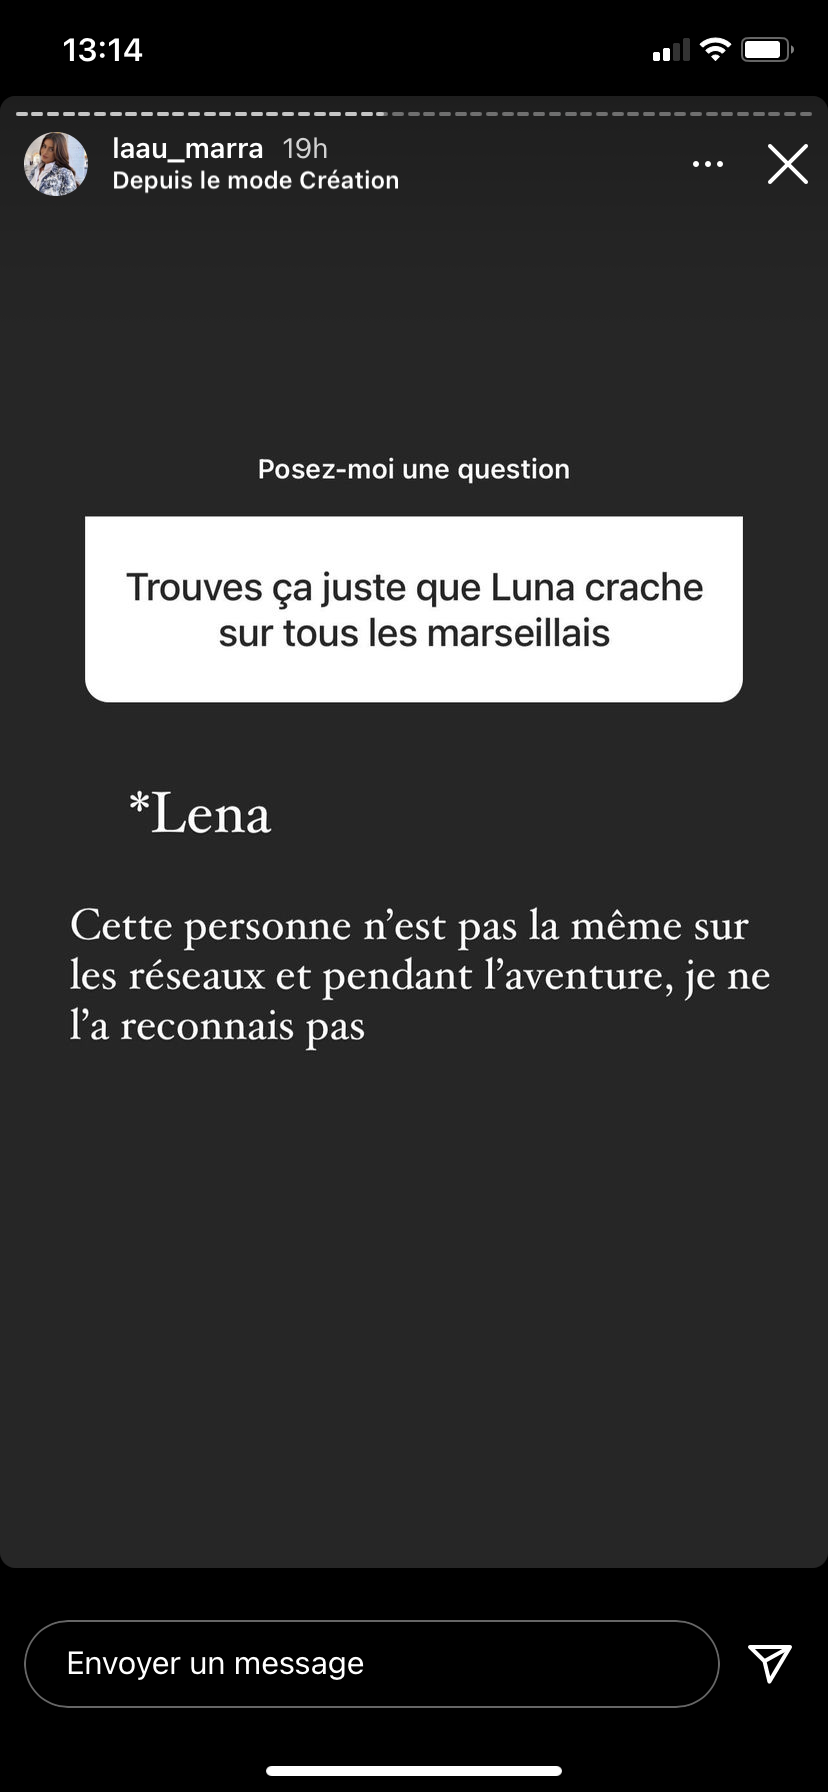  Laura donne son avis sur Léna @Instagram